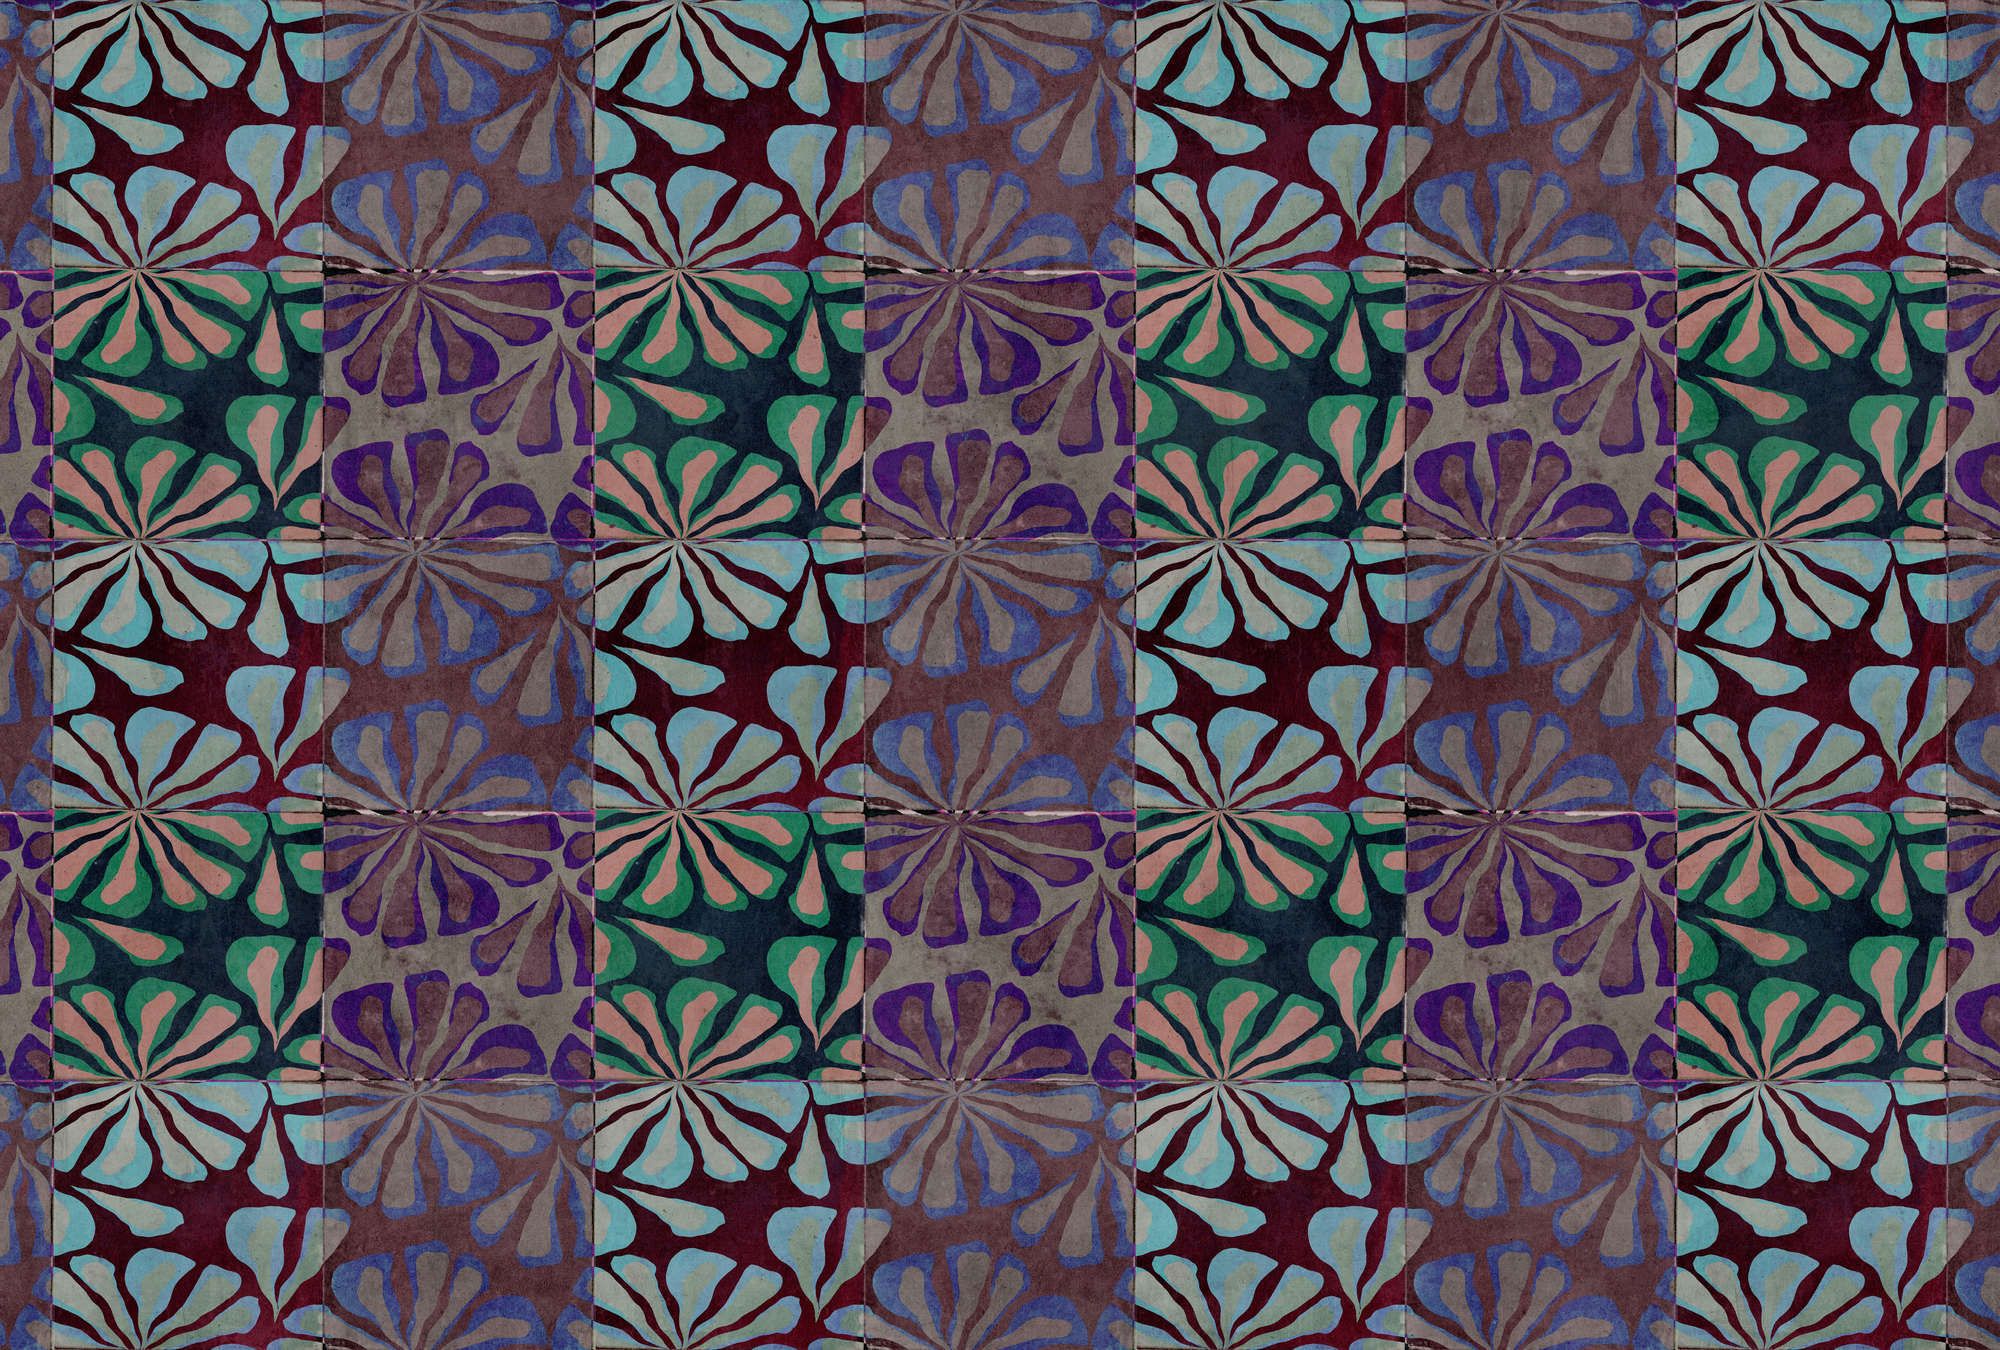             Fotomural »nevio« - Diseño de mosaico de colores con aspecto de enlucido de hormigón - Material sin tejer liso y ligeramente nacarado
        